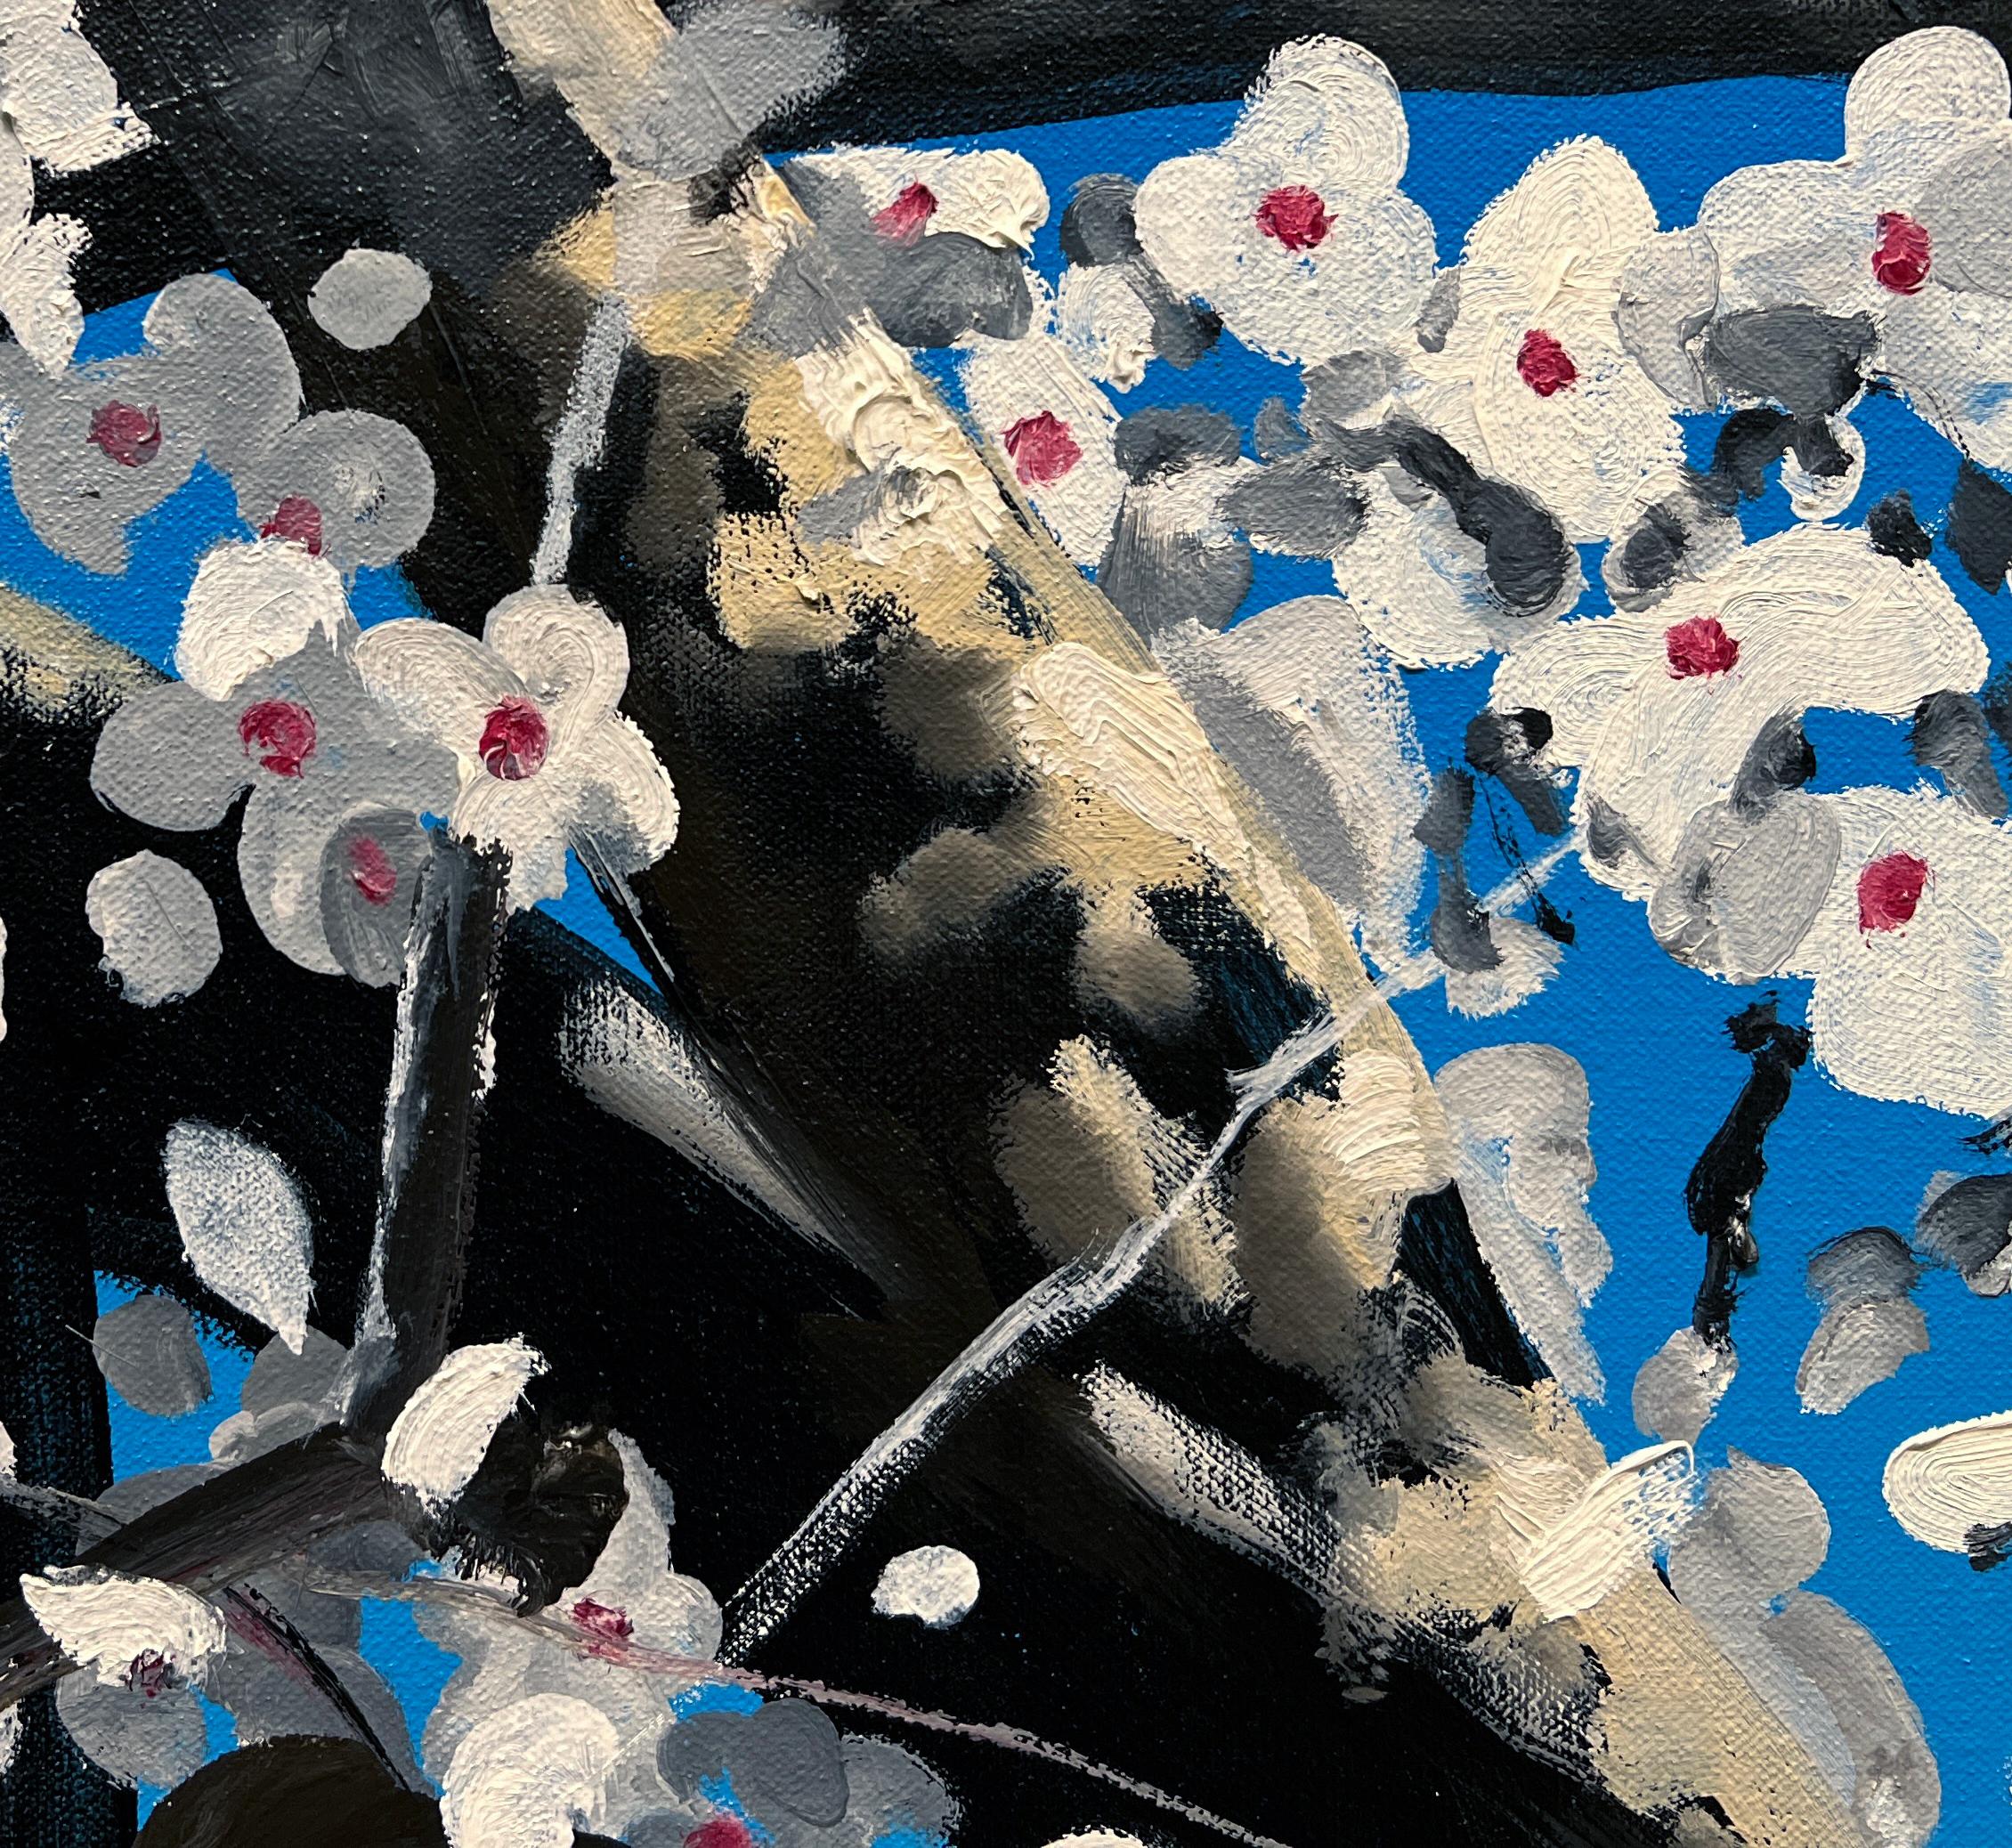 BLOSSOM - Contemporary Realism/ Spring / Cherry Blossoms For Sale 2